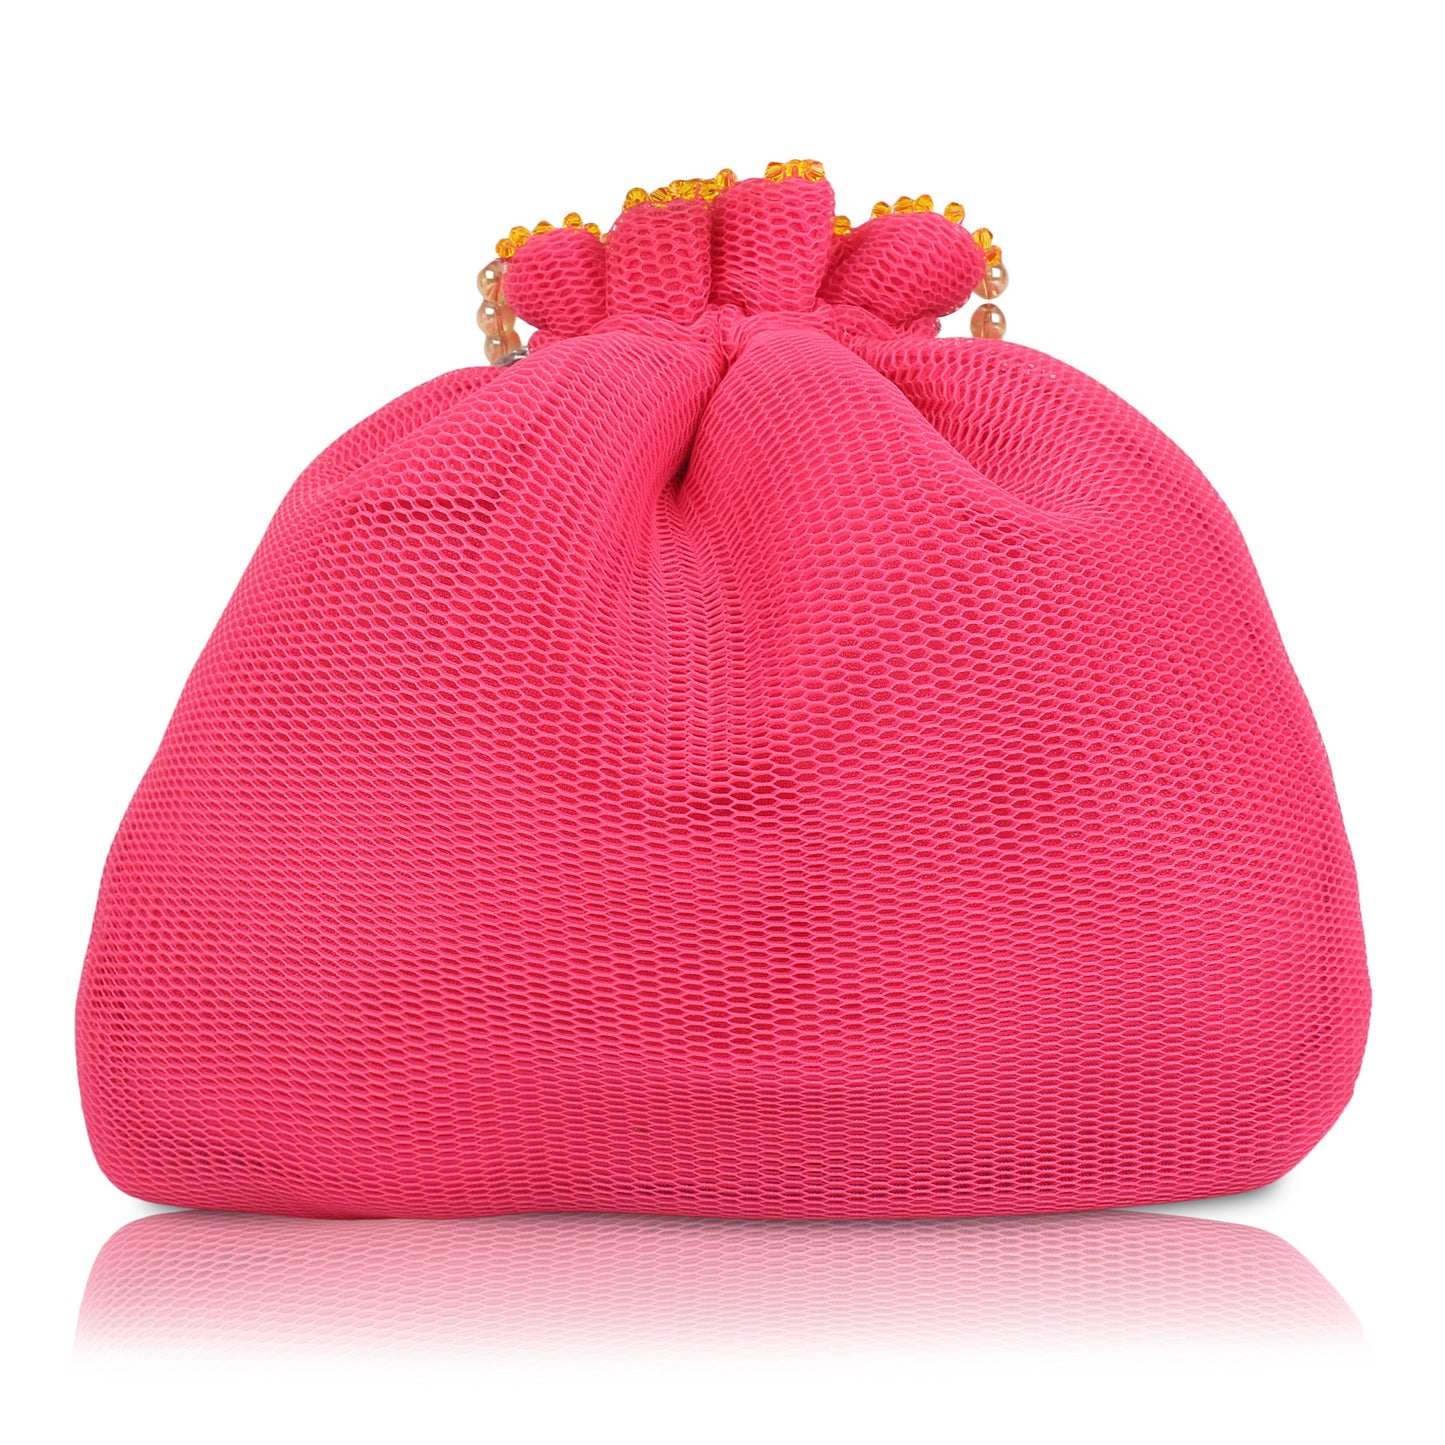 pink potli bag online 